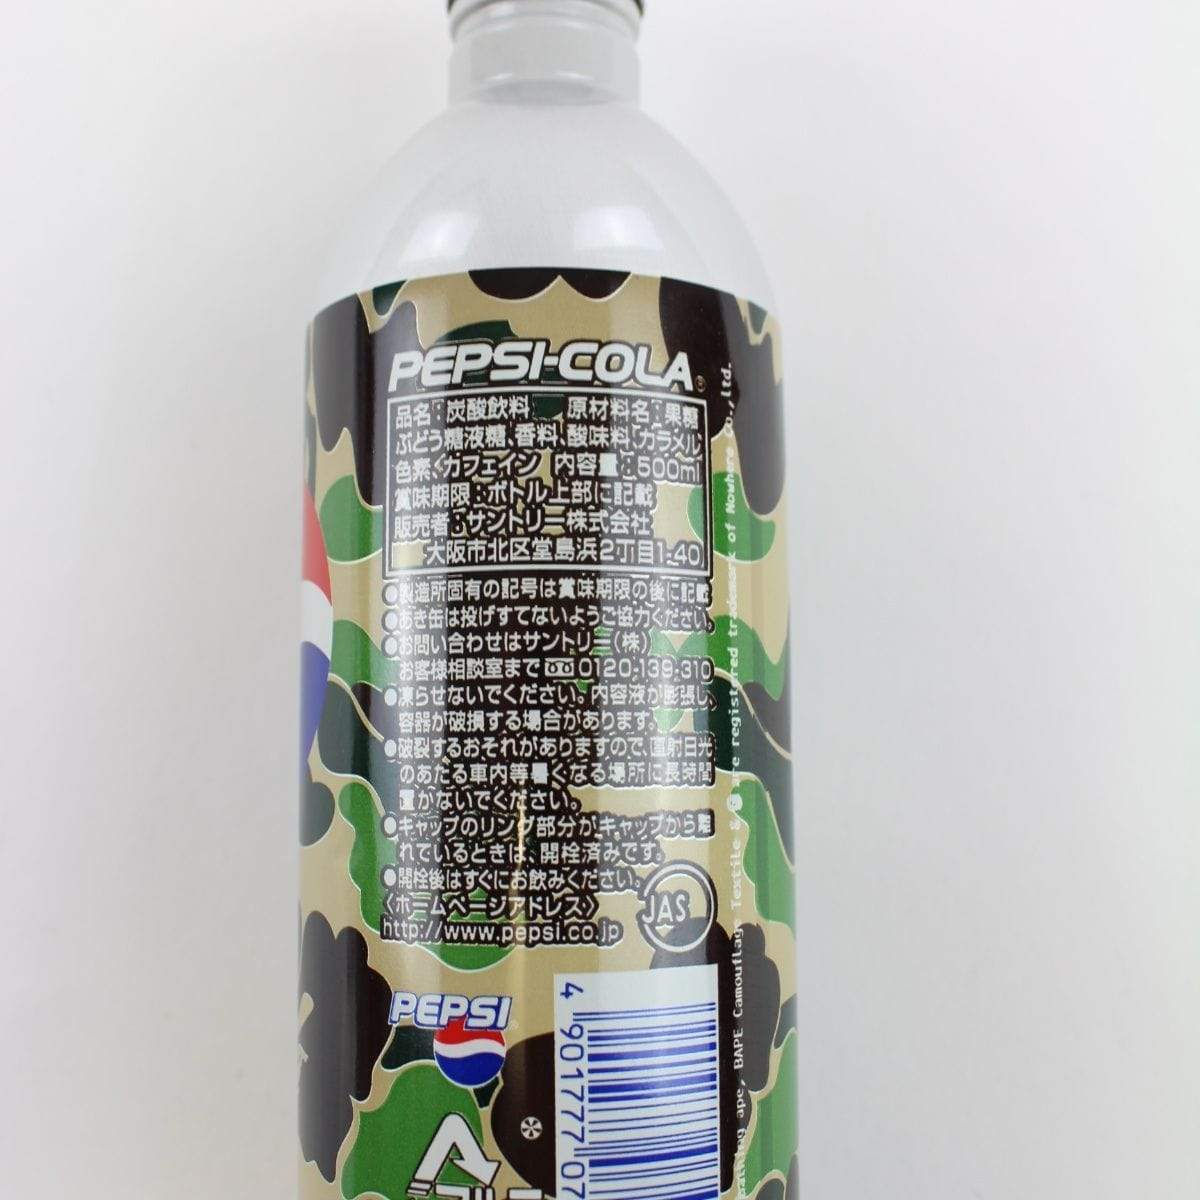 Bape x Pepsi Bottle set - SaruGeneral